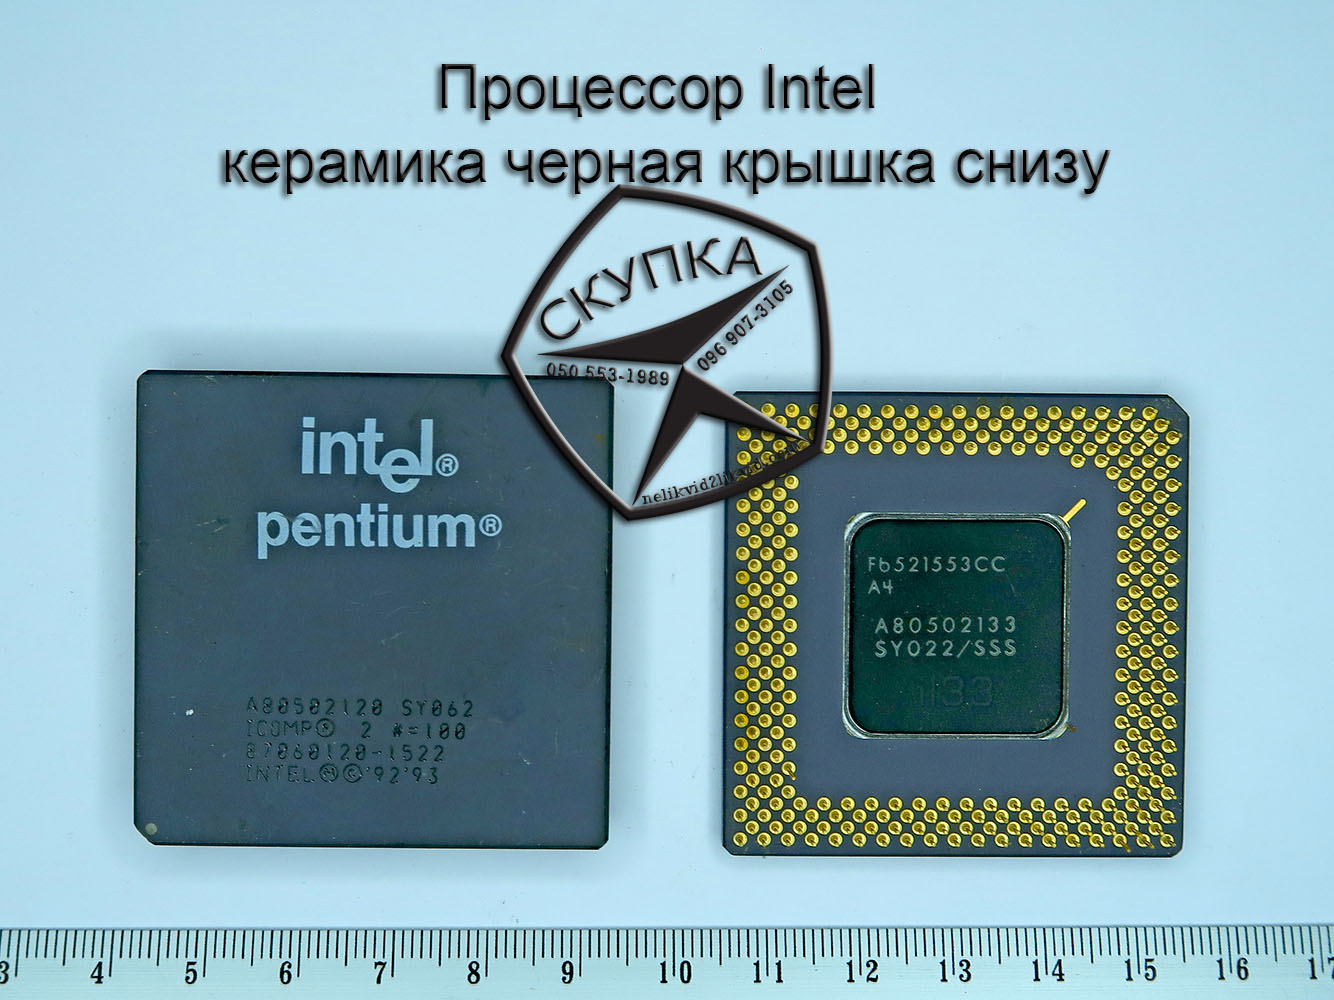 Крышка процессора Интел. Процессор Интел м с 06. Intel Ceramics.